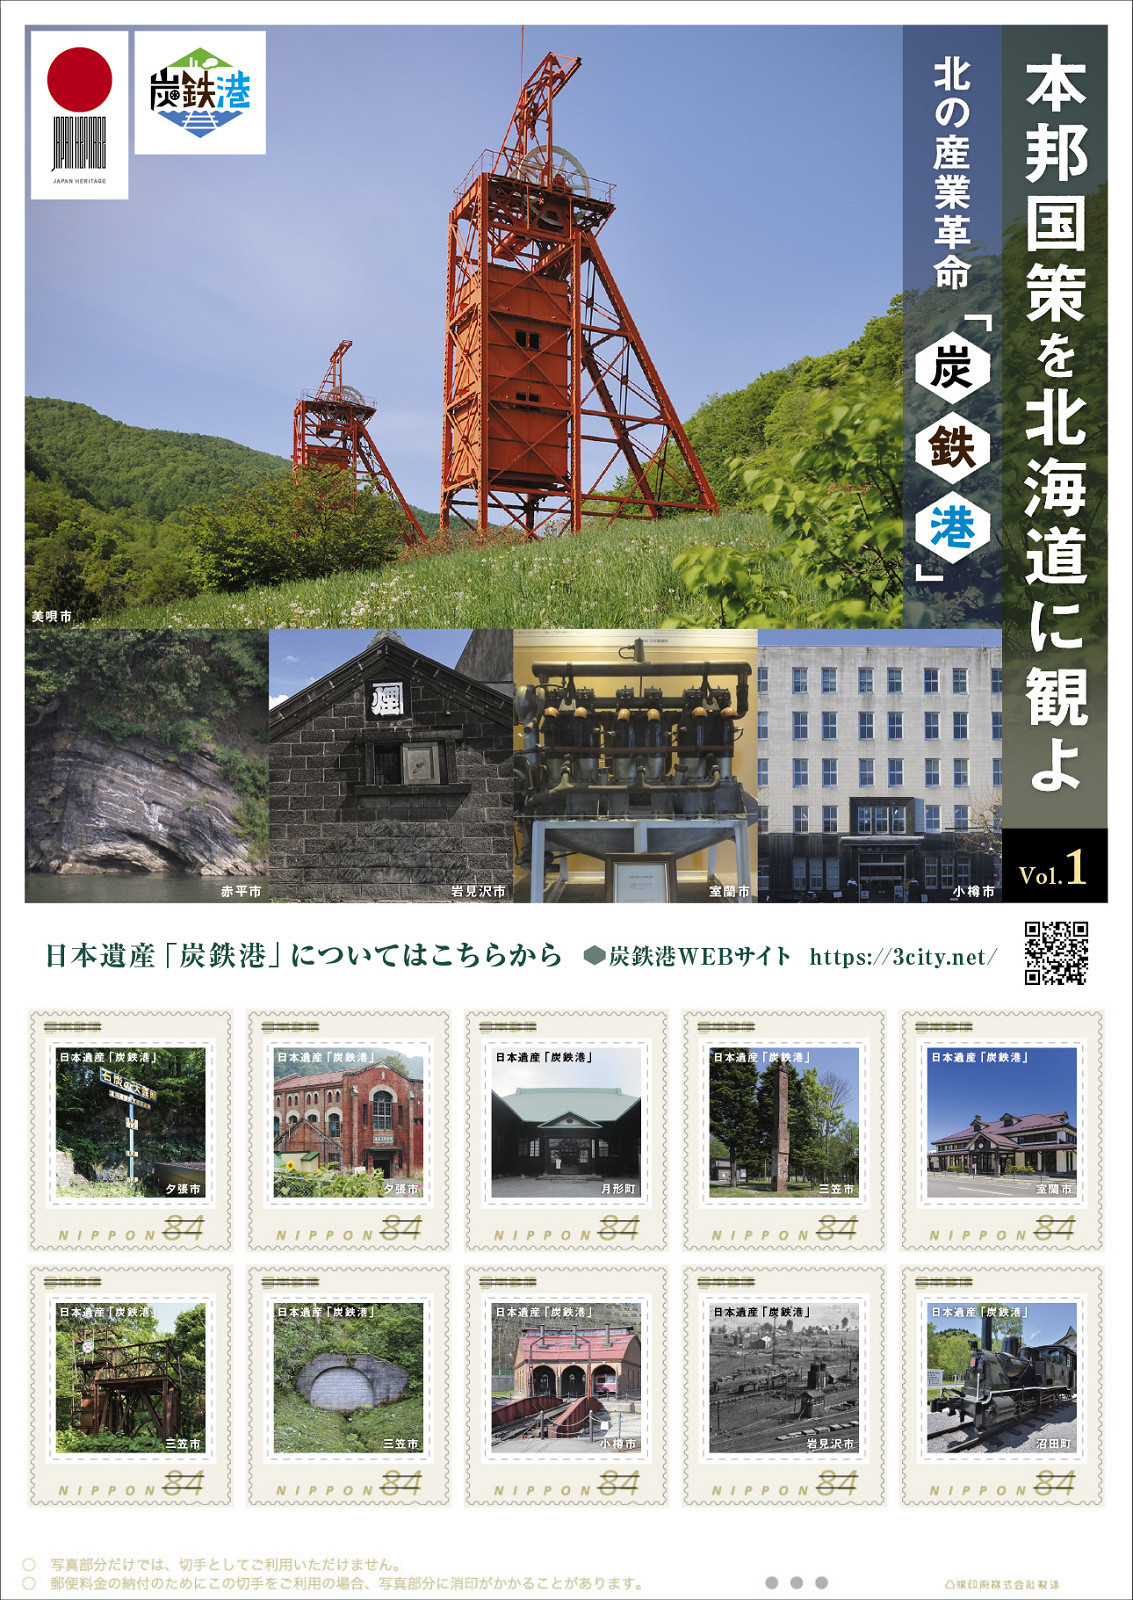 北の産業革命「炭鉄港」フレーム切手（Vol.1）